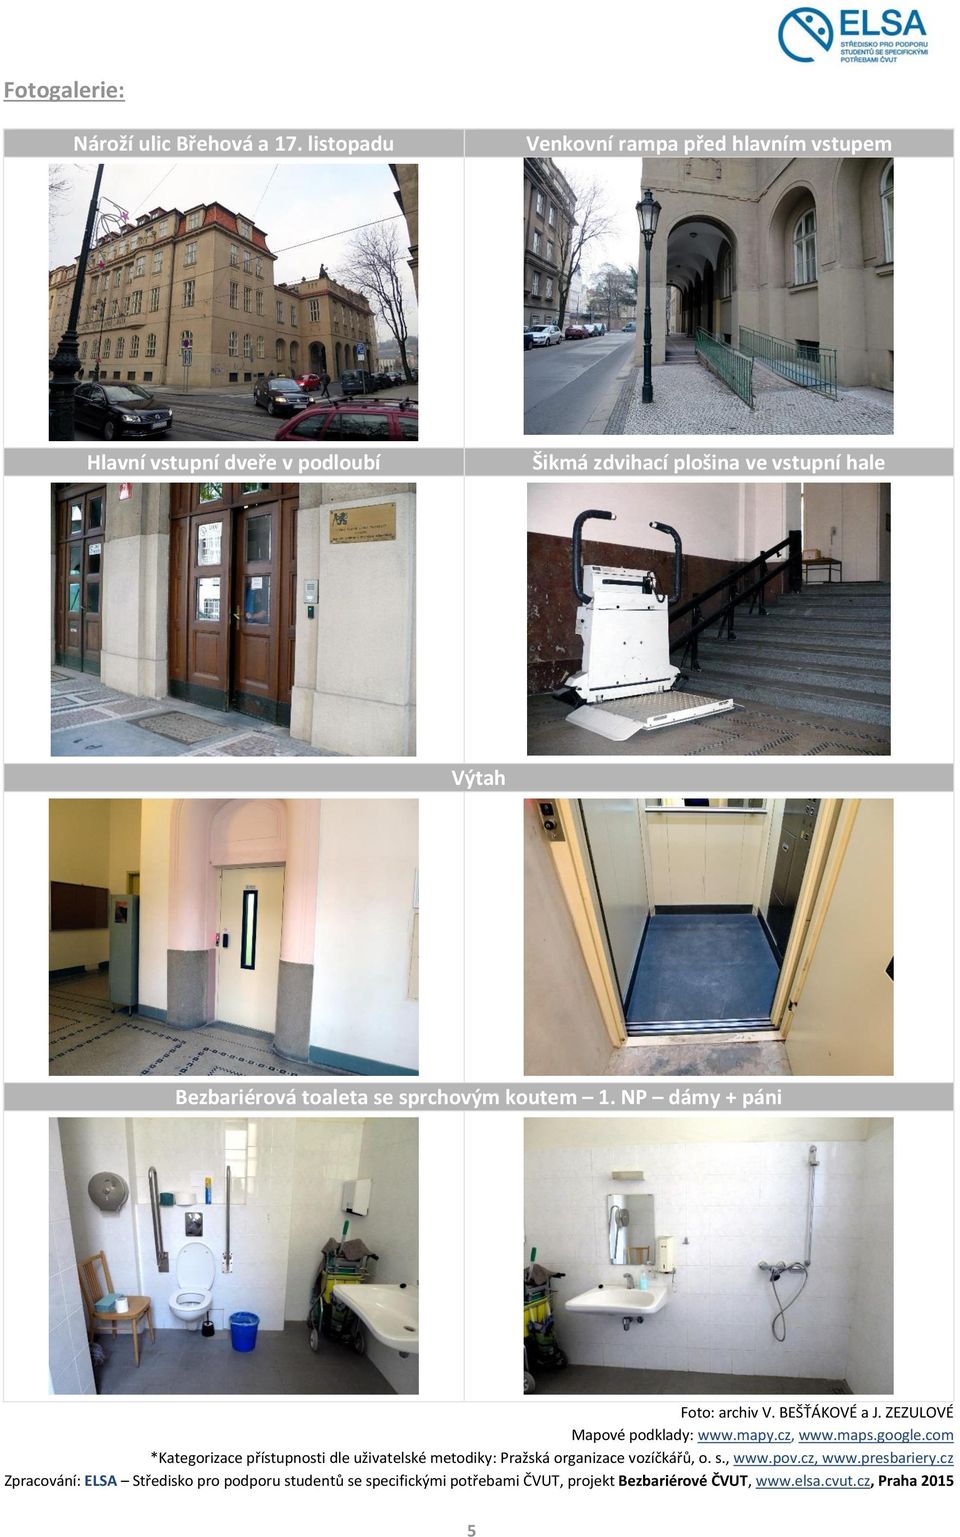 toaleta se sprchovým koutem 1. NP dámy + páni Foto: archiv V. BEŠŤÁKOVÉ a J. ZEZULOVÉ Mapové podklady: www.mapy.cz, www.maps.google.